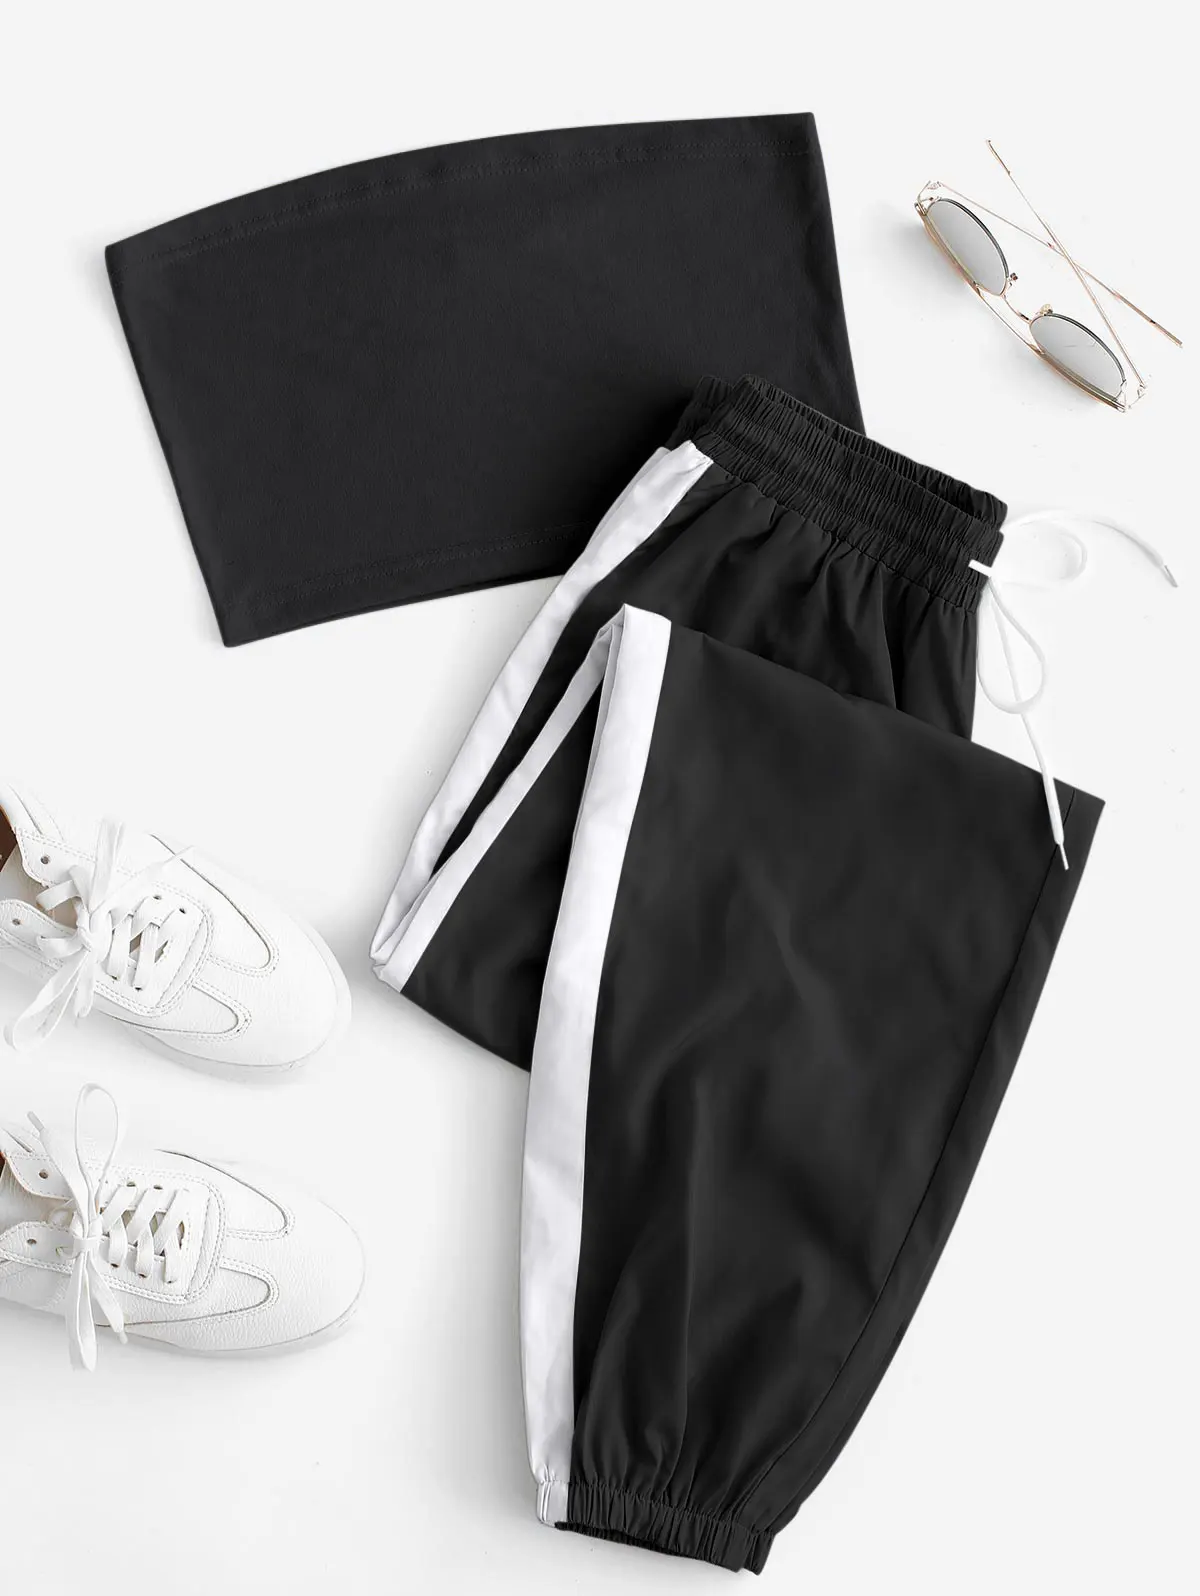 ZAFUL, женский спортивный комплект из 2 предметов,, без бретелек, бандо, короткий топ, длинный, контрастный, с завязками, брюки, набор, летний, женский, хлопок, комплект одежды - Цвет: Black